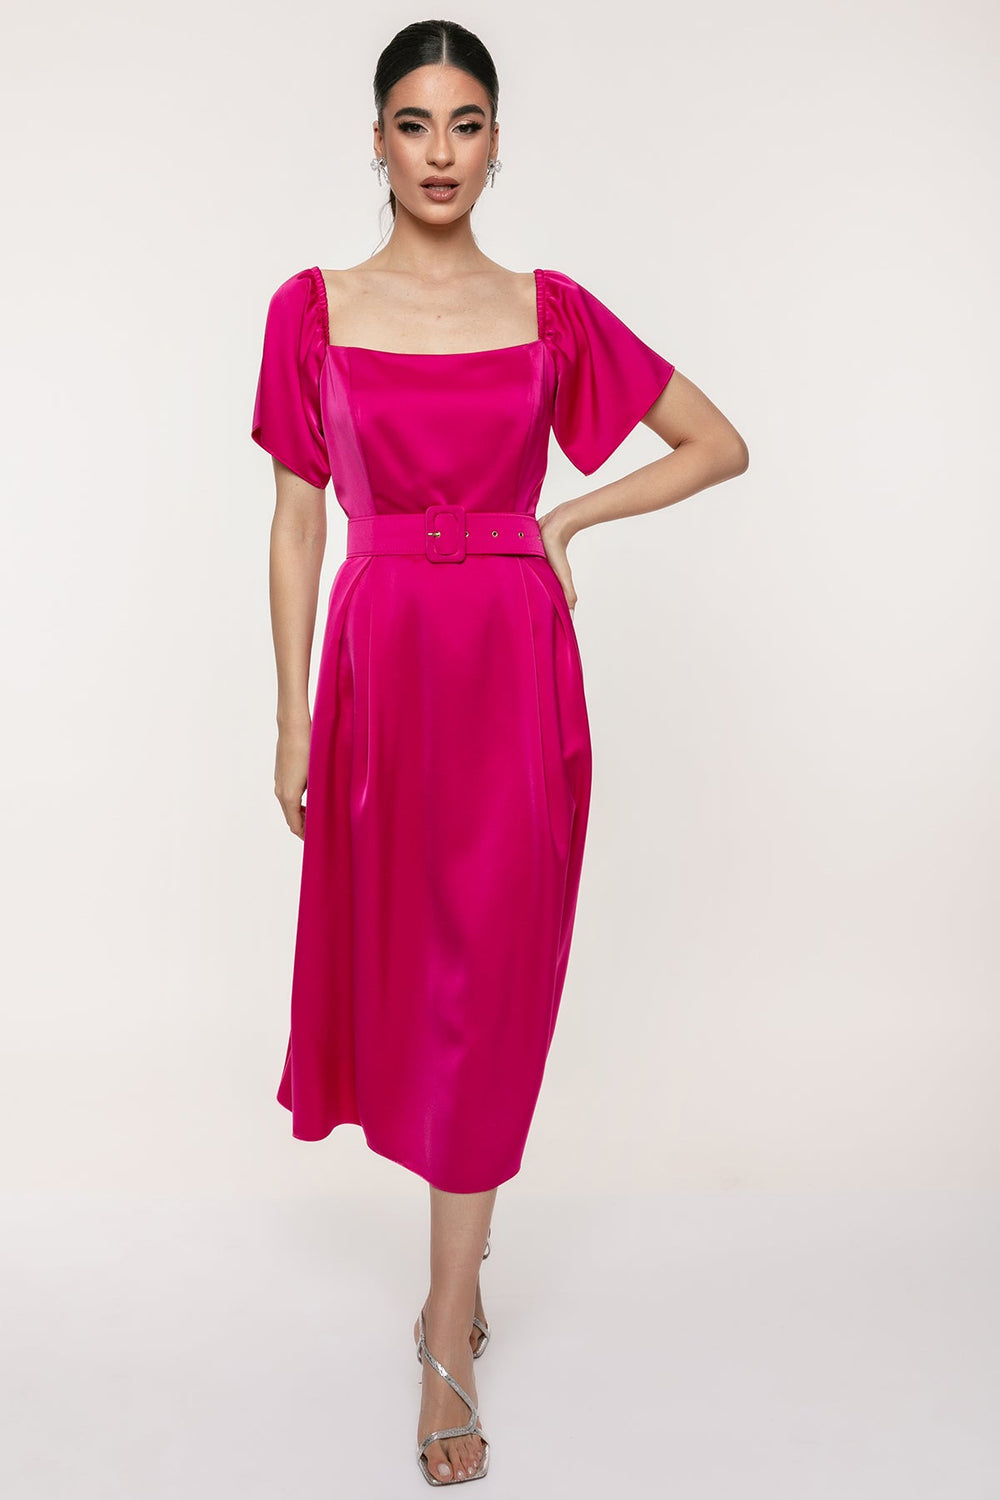 Φόρεμα μίντι με πιέτες Coelia - A Collection Boutique